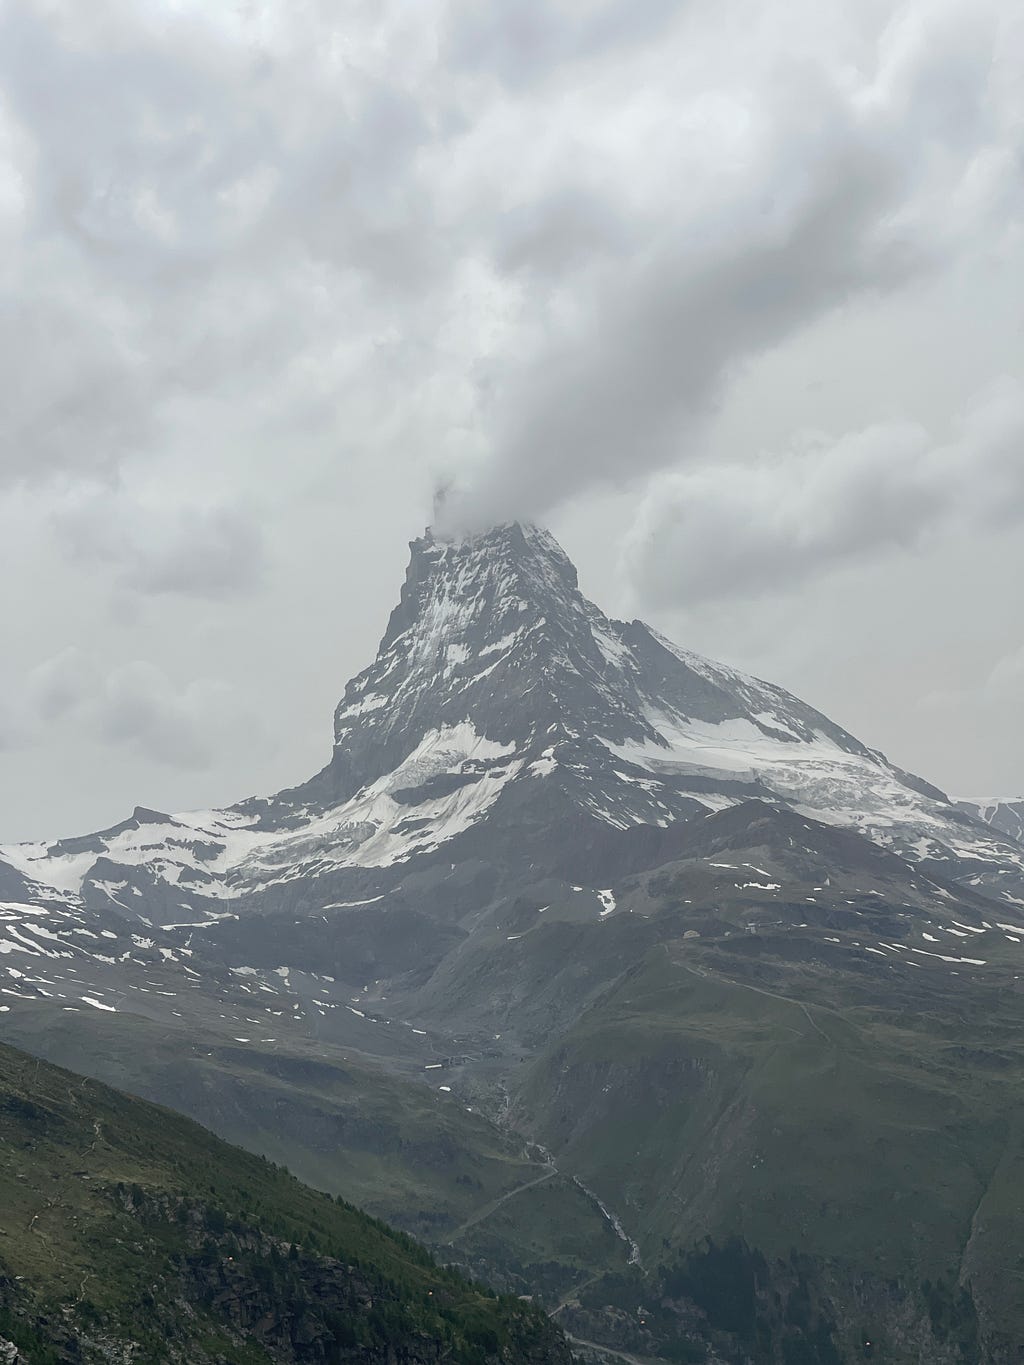 View of the Matterhorn from the cogwheel train